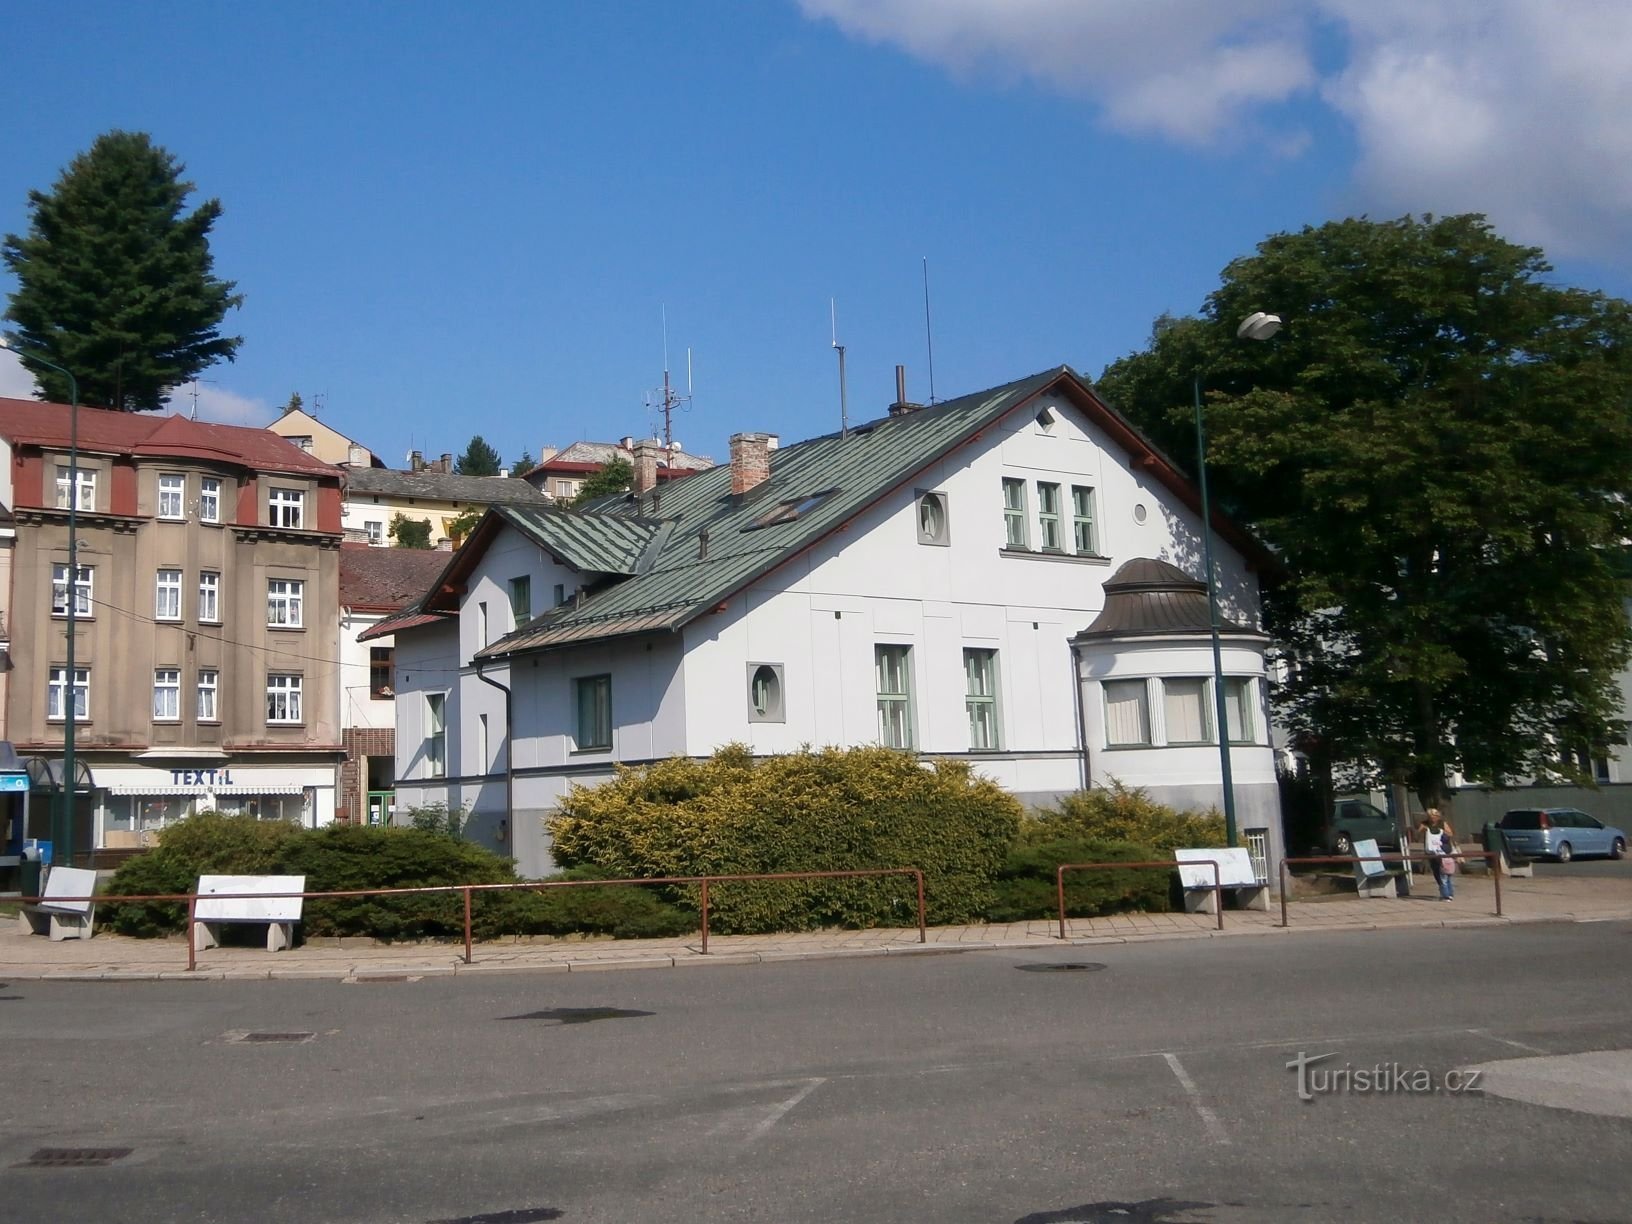 Ancienne villa de Čap avec un arrêt de bus (Úpice, 6.7.2017 juillet XNUMX)